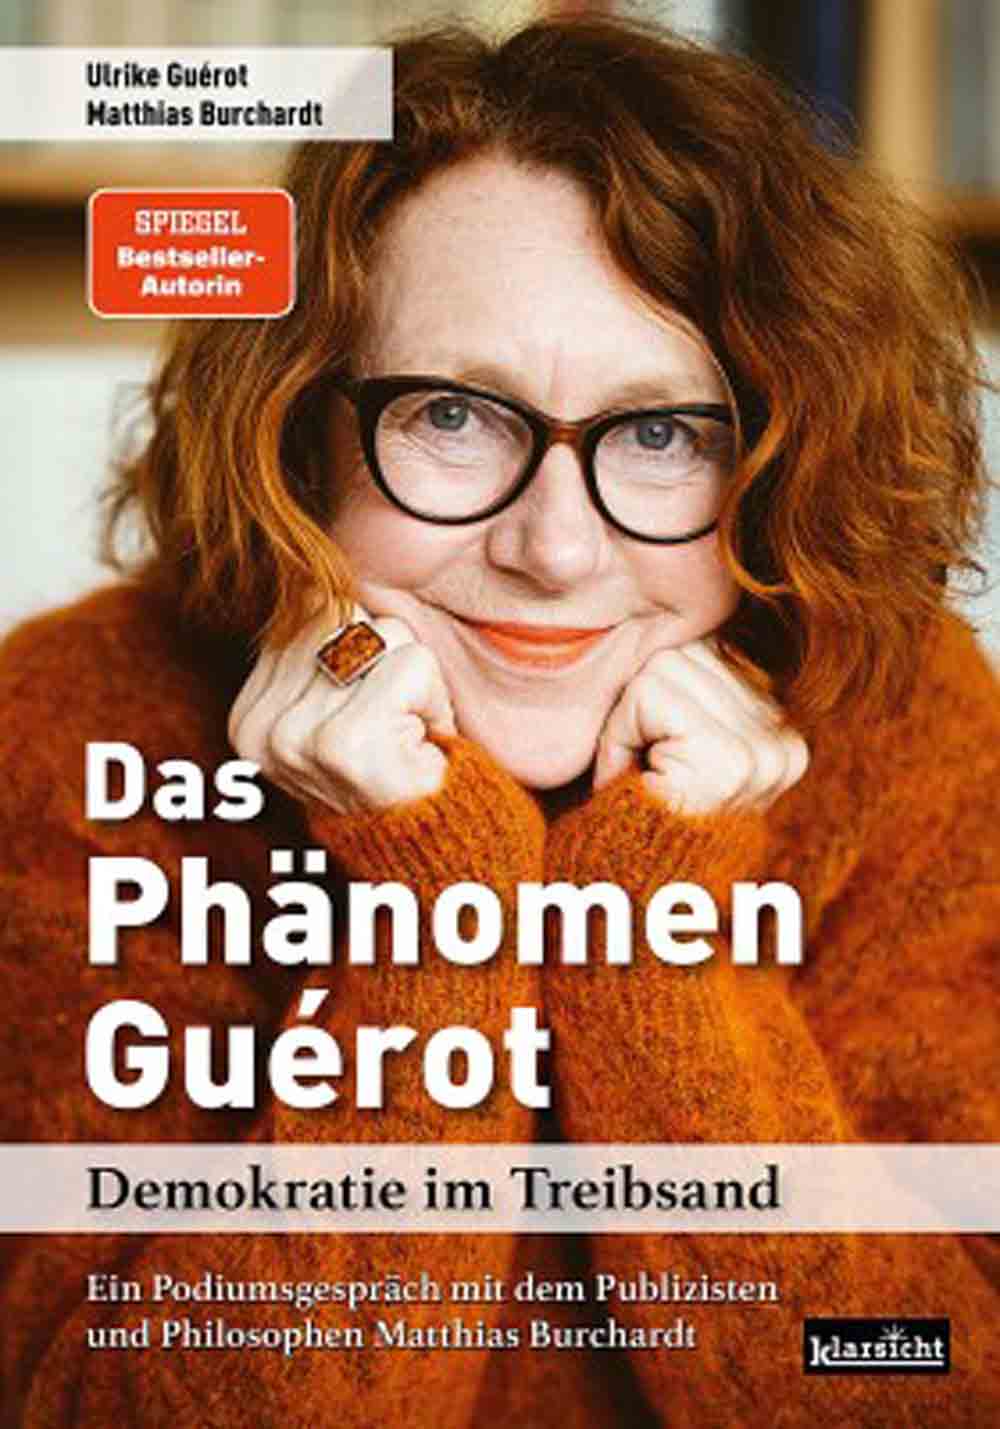 Lesetipps für Gütersloh, Prof. Dr. Ulrike Guérot präsentiert trotz Kritik der etablierten Medien ihr neues Buch